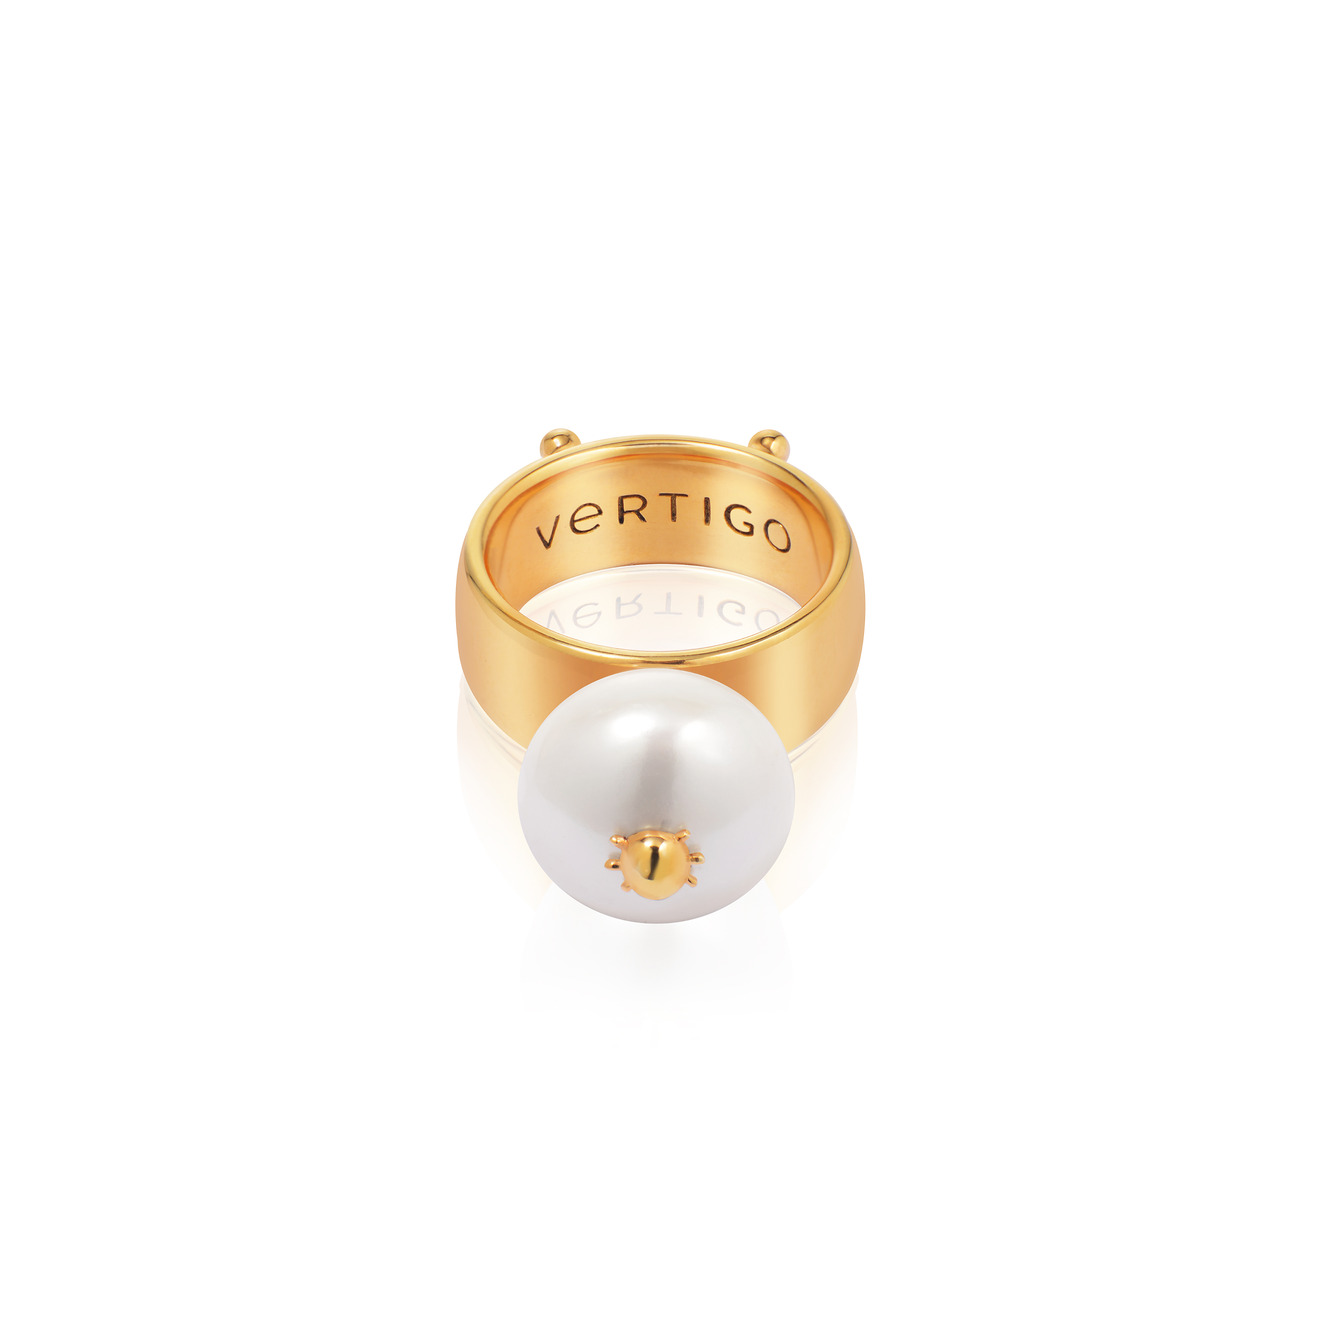 Vertigo Jewellery Lab Позолоченное кольцо СLEOPTR LADYBUG RING из серебра с речным жемчугом